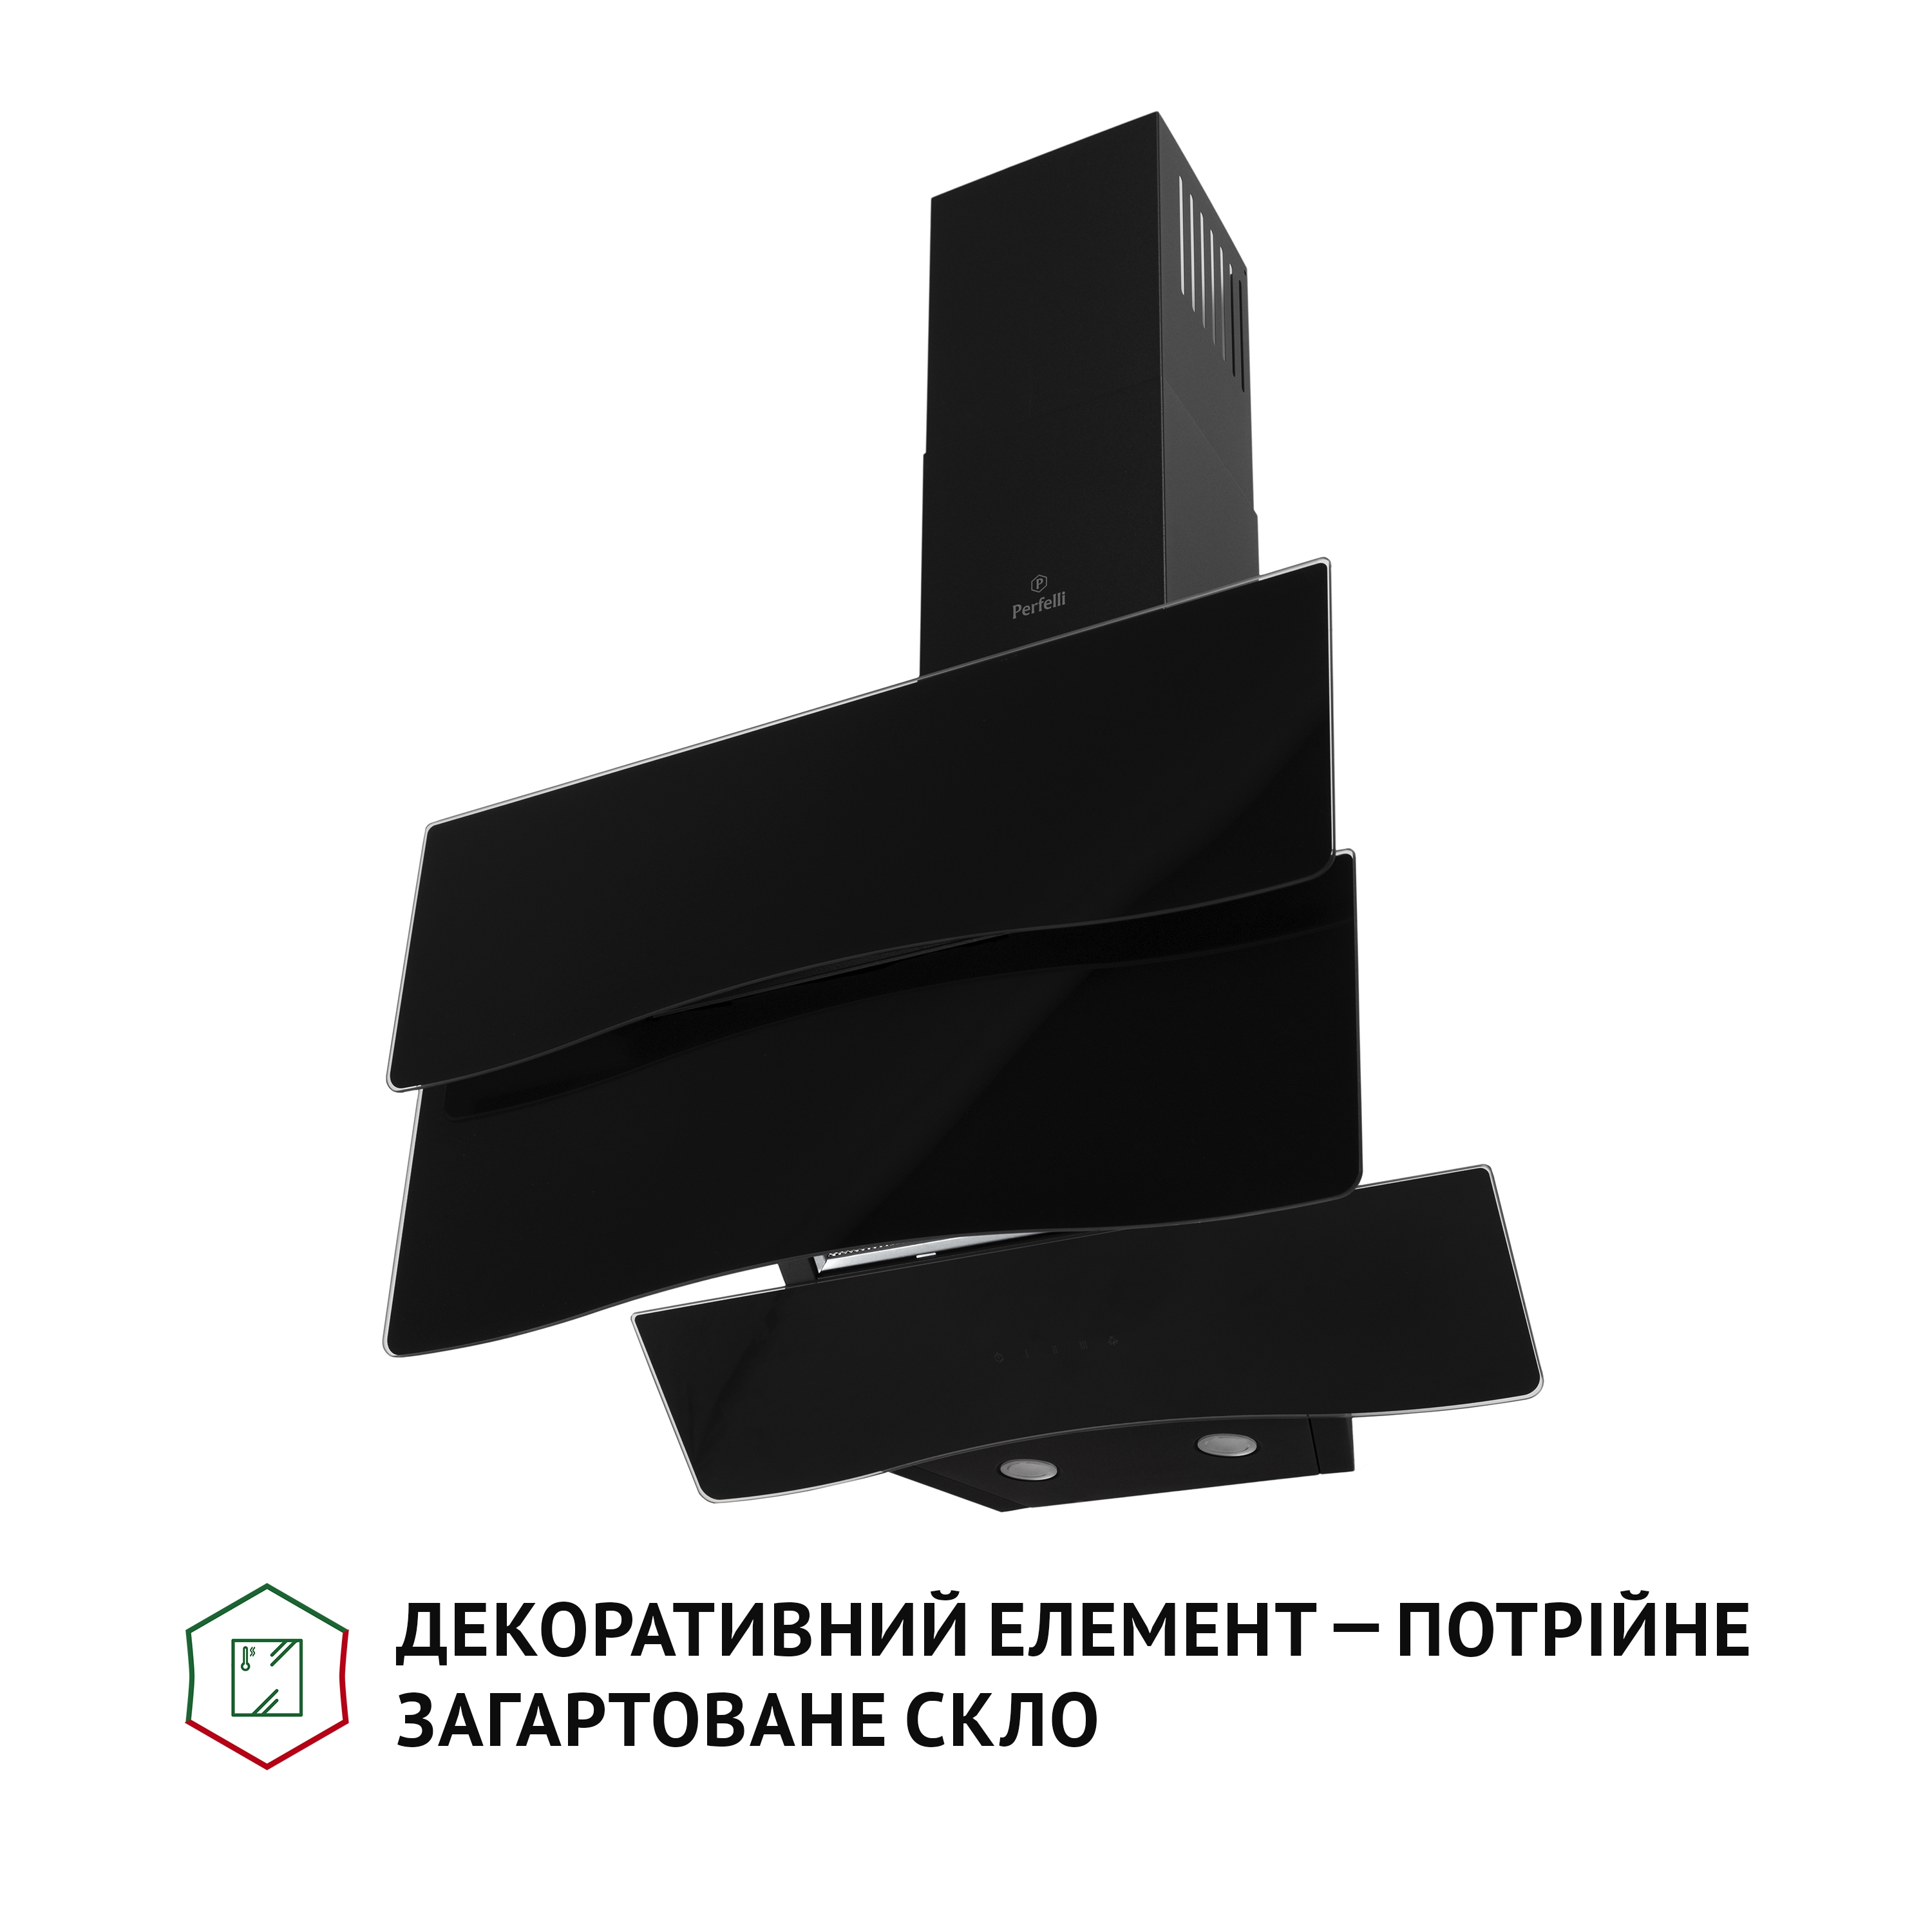 продаём Perfelli DNS 6482 D 850 BL LED в Украине - фото 4